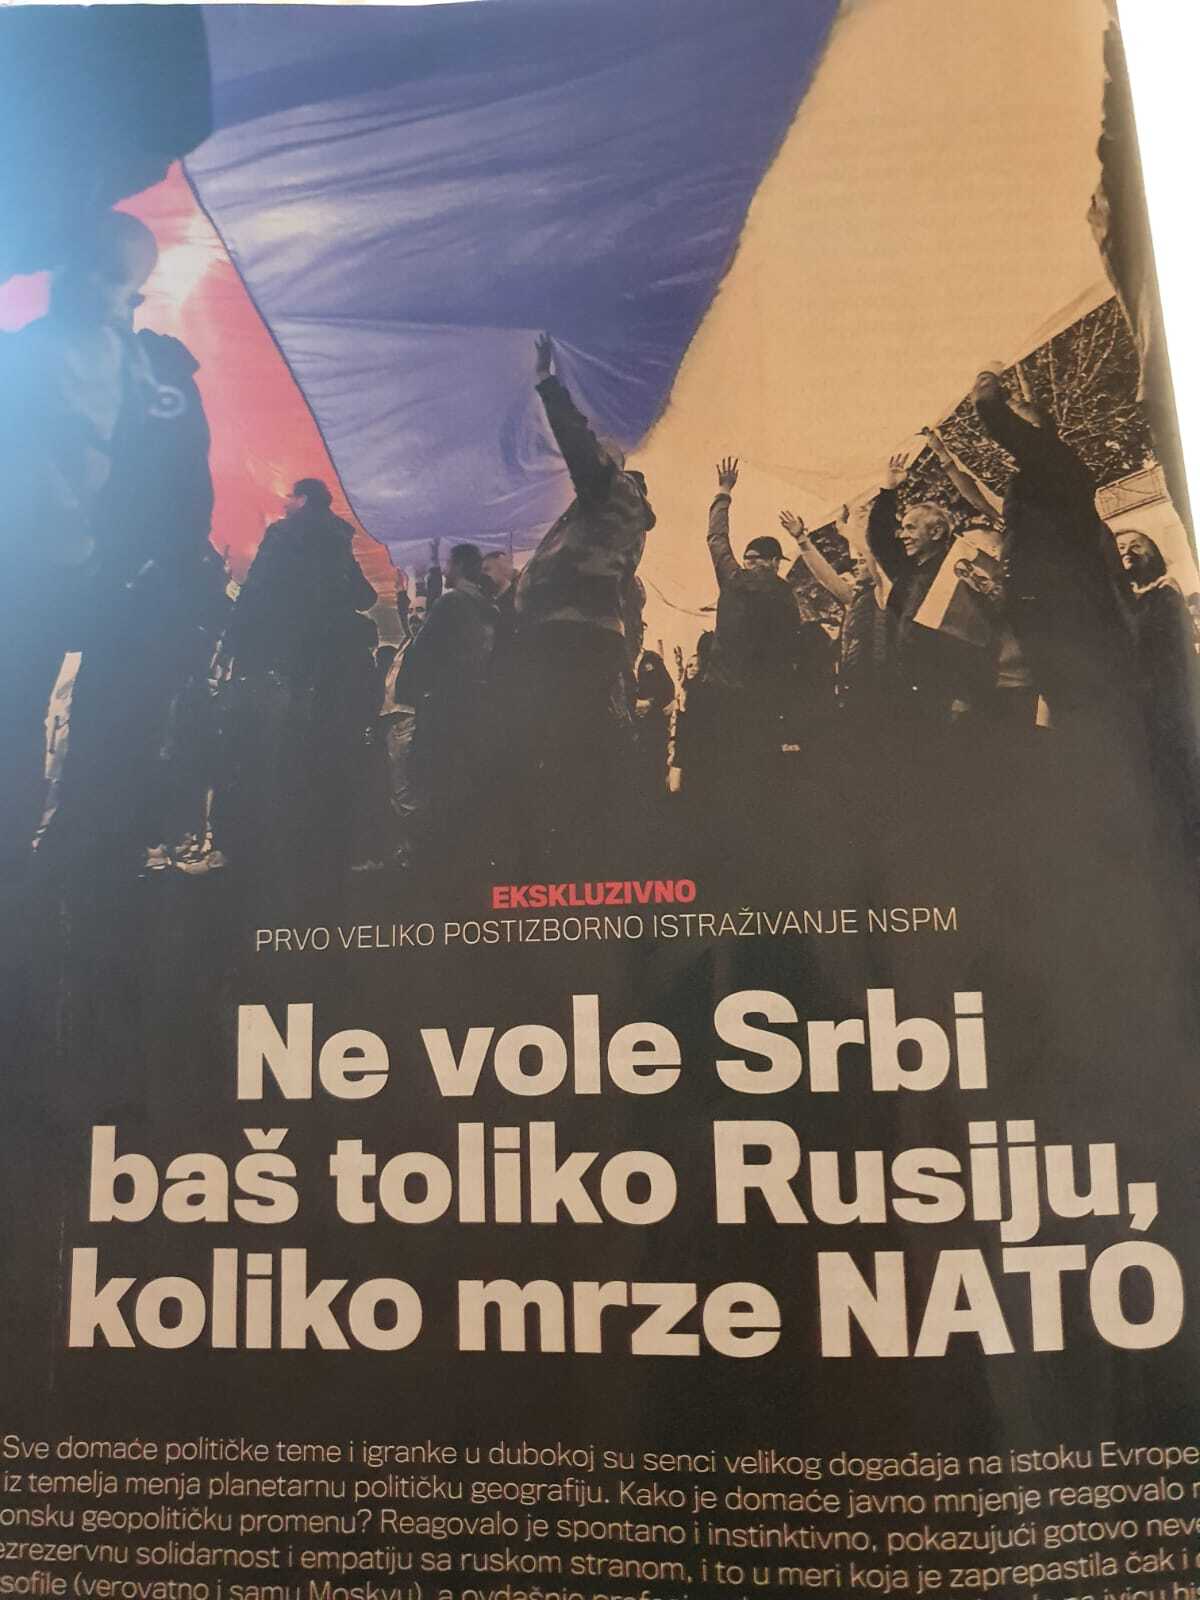 Не так сербы Россию любят, как ненавидят НАТО